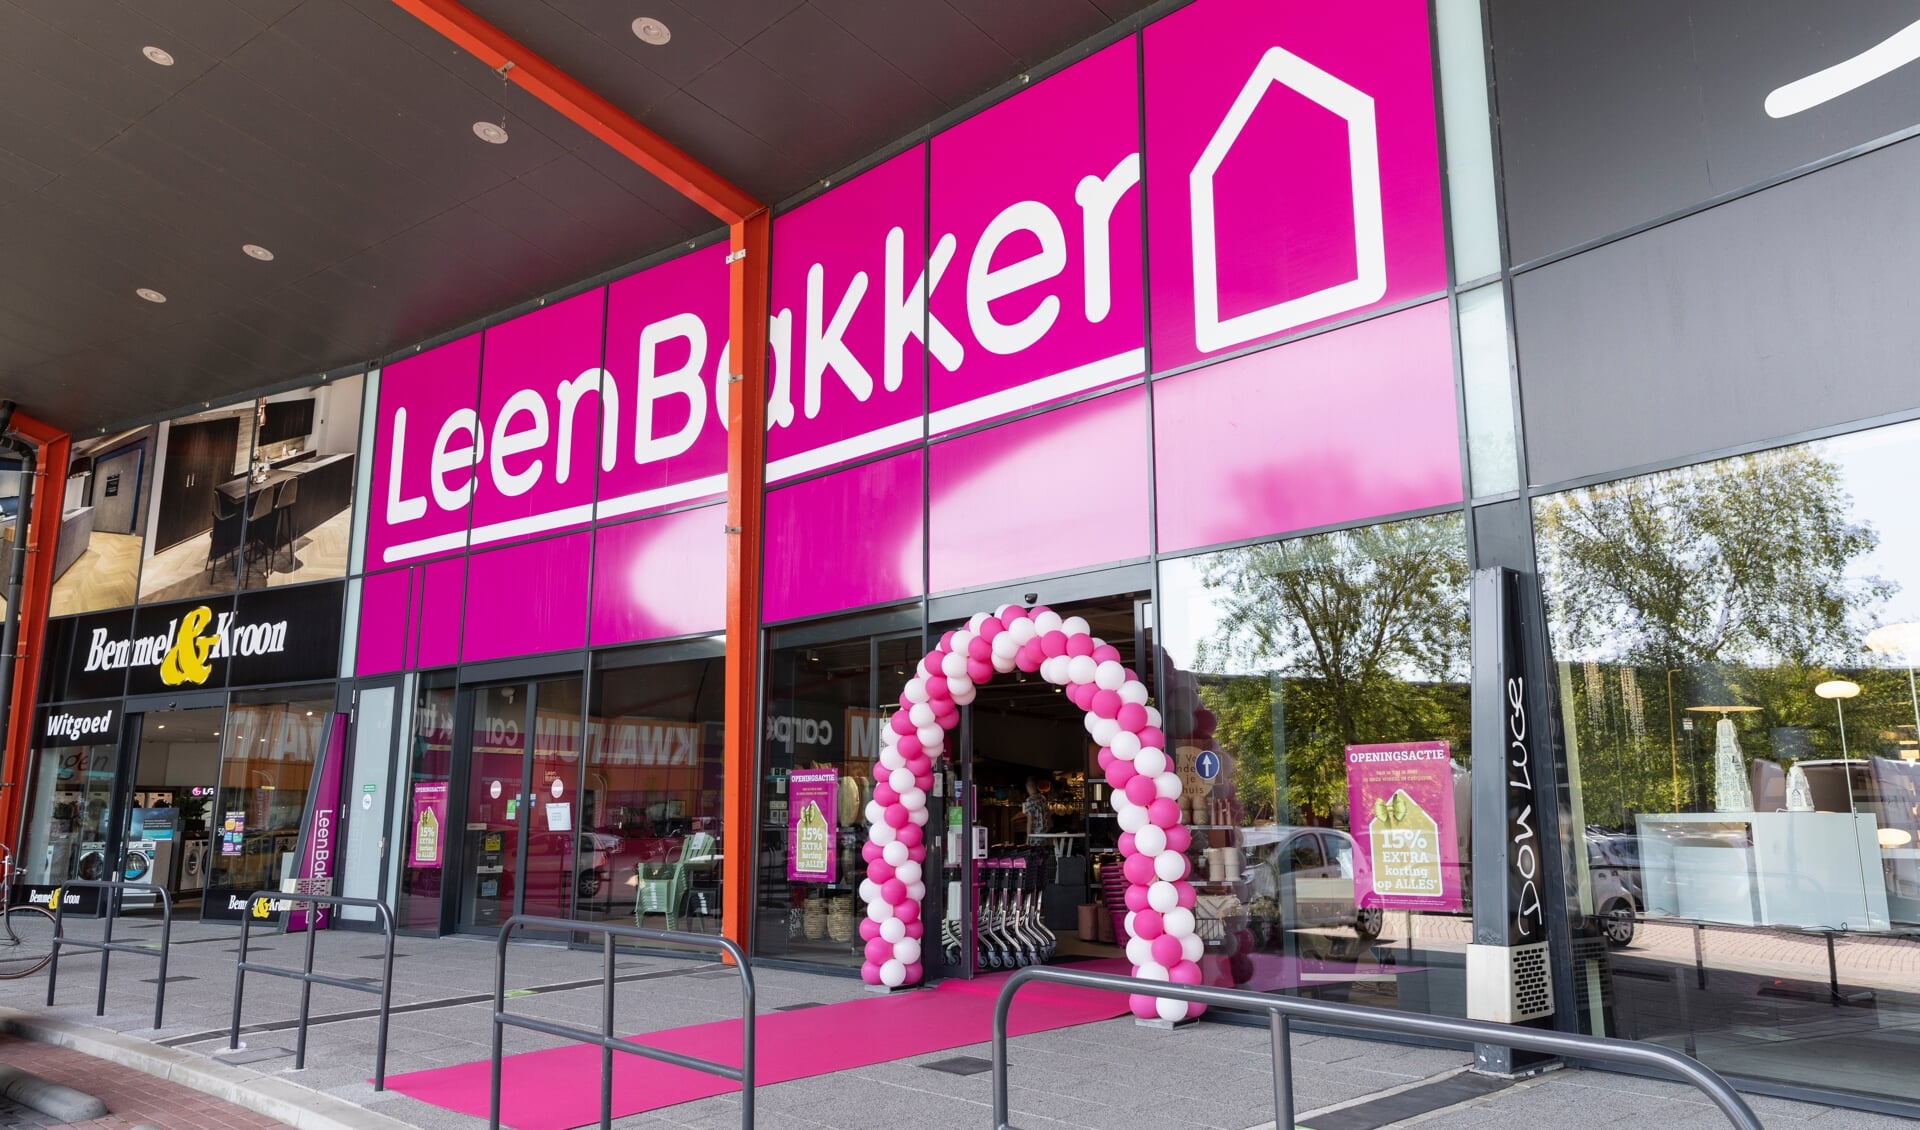 stromen spectrum Verdeel Leen Bakker opent vernieuwde winkel in Boulevard Cruquius - HCnieuws |  Nieuws uit de regio Hoofddorp